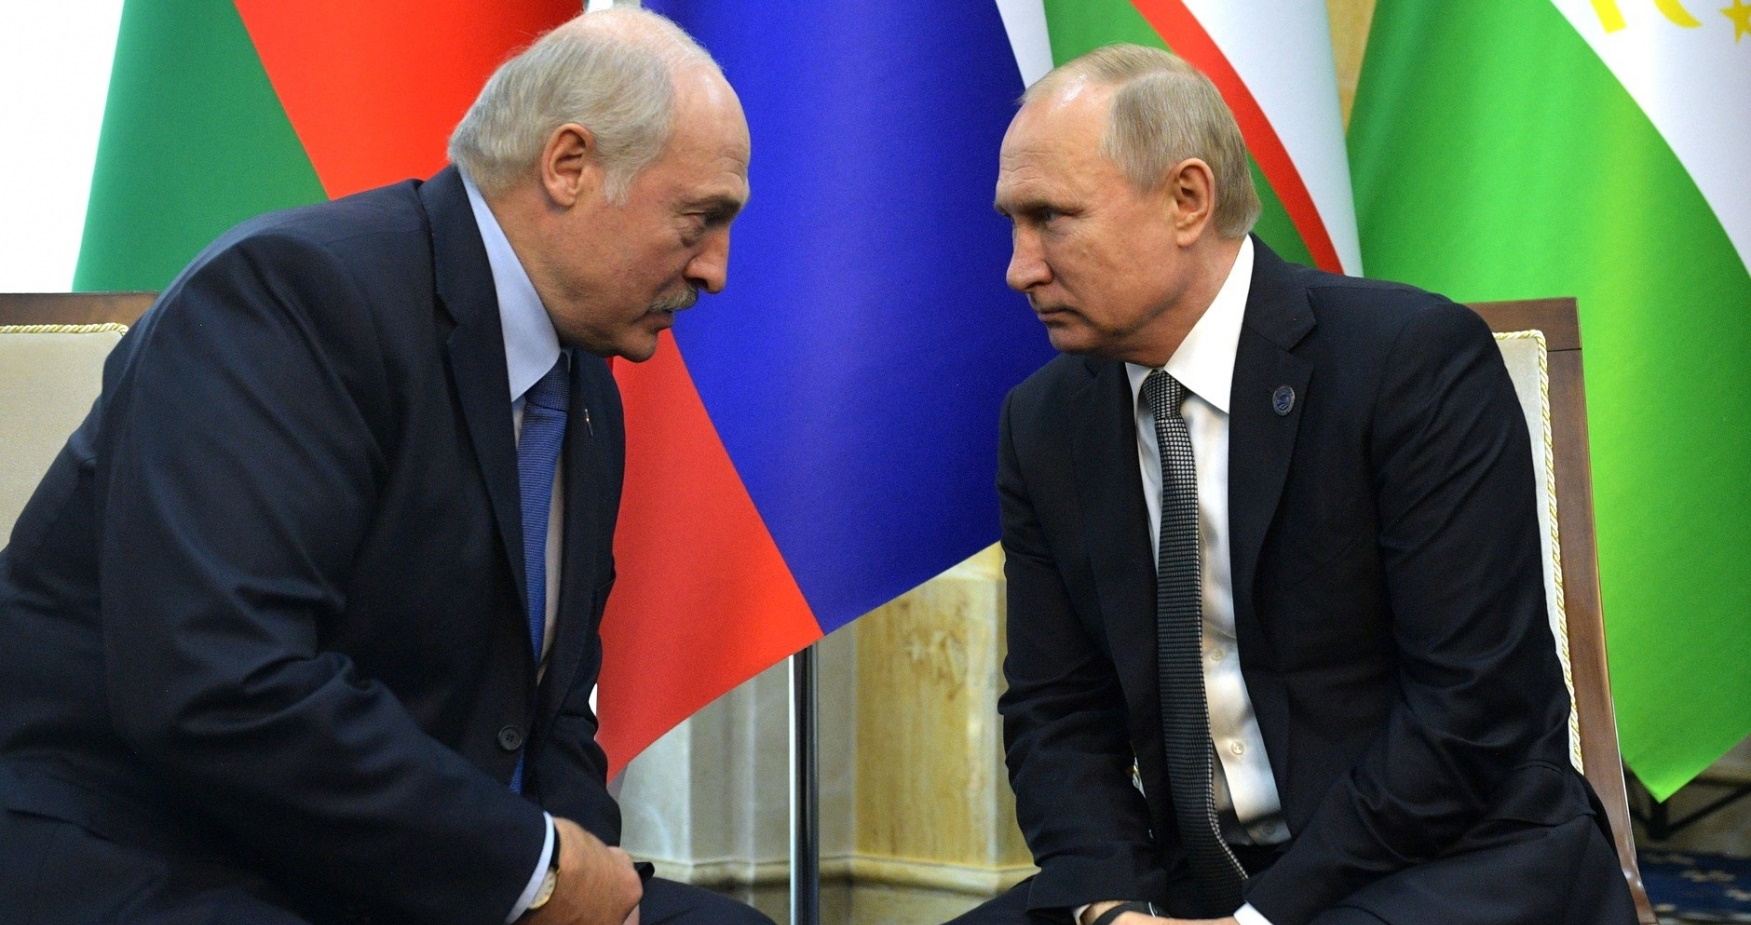 "Лукашенко полностью согласился на все условия Путина", - российский политолог